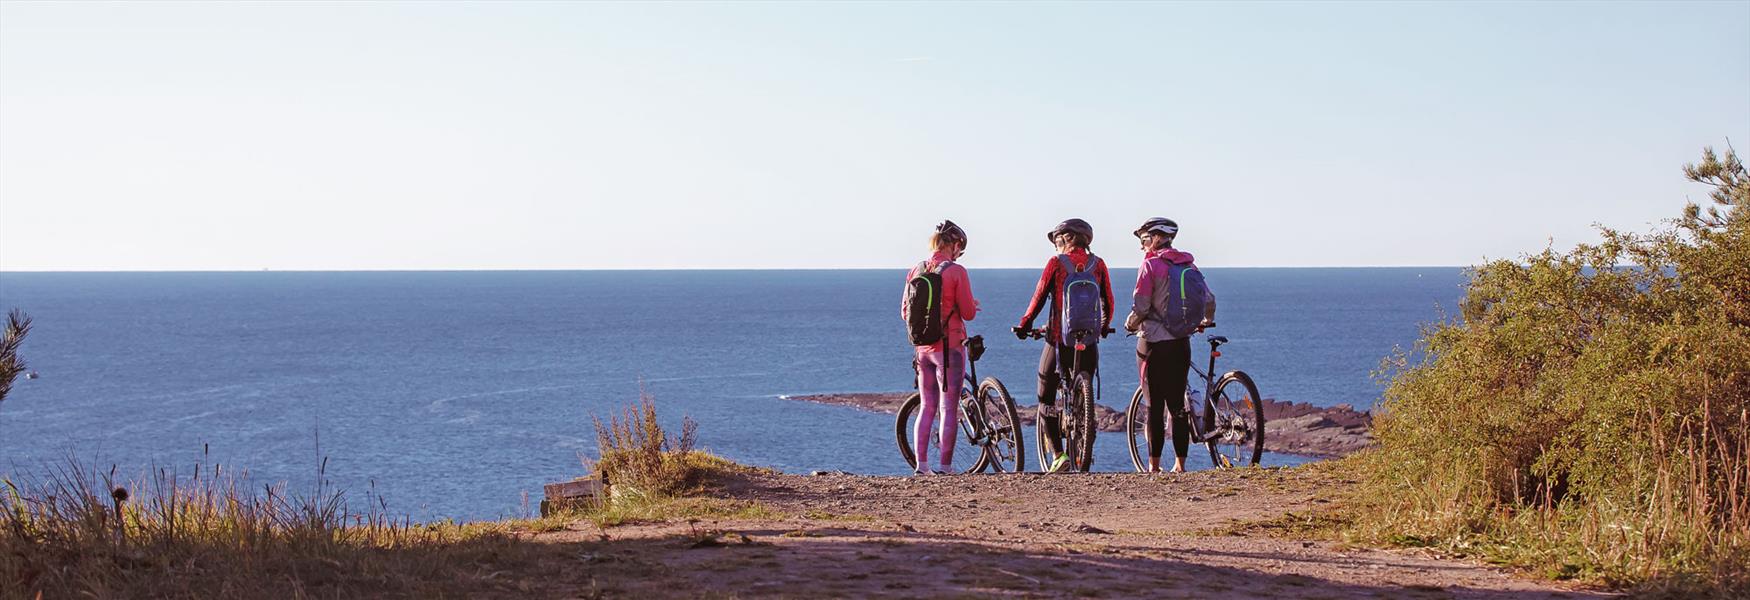 3 damer med sykler ser ut over sjøen